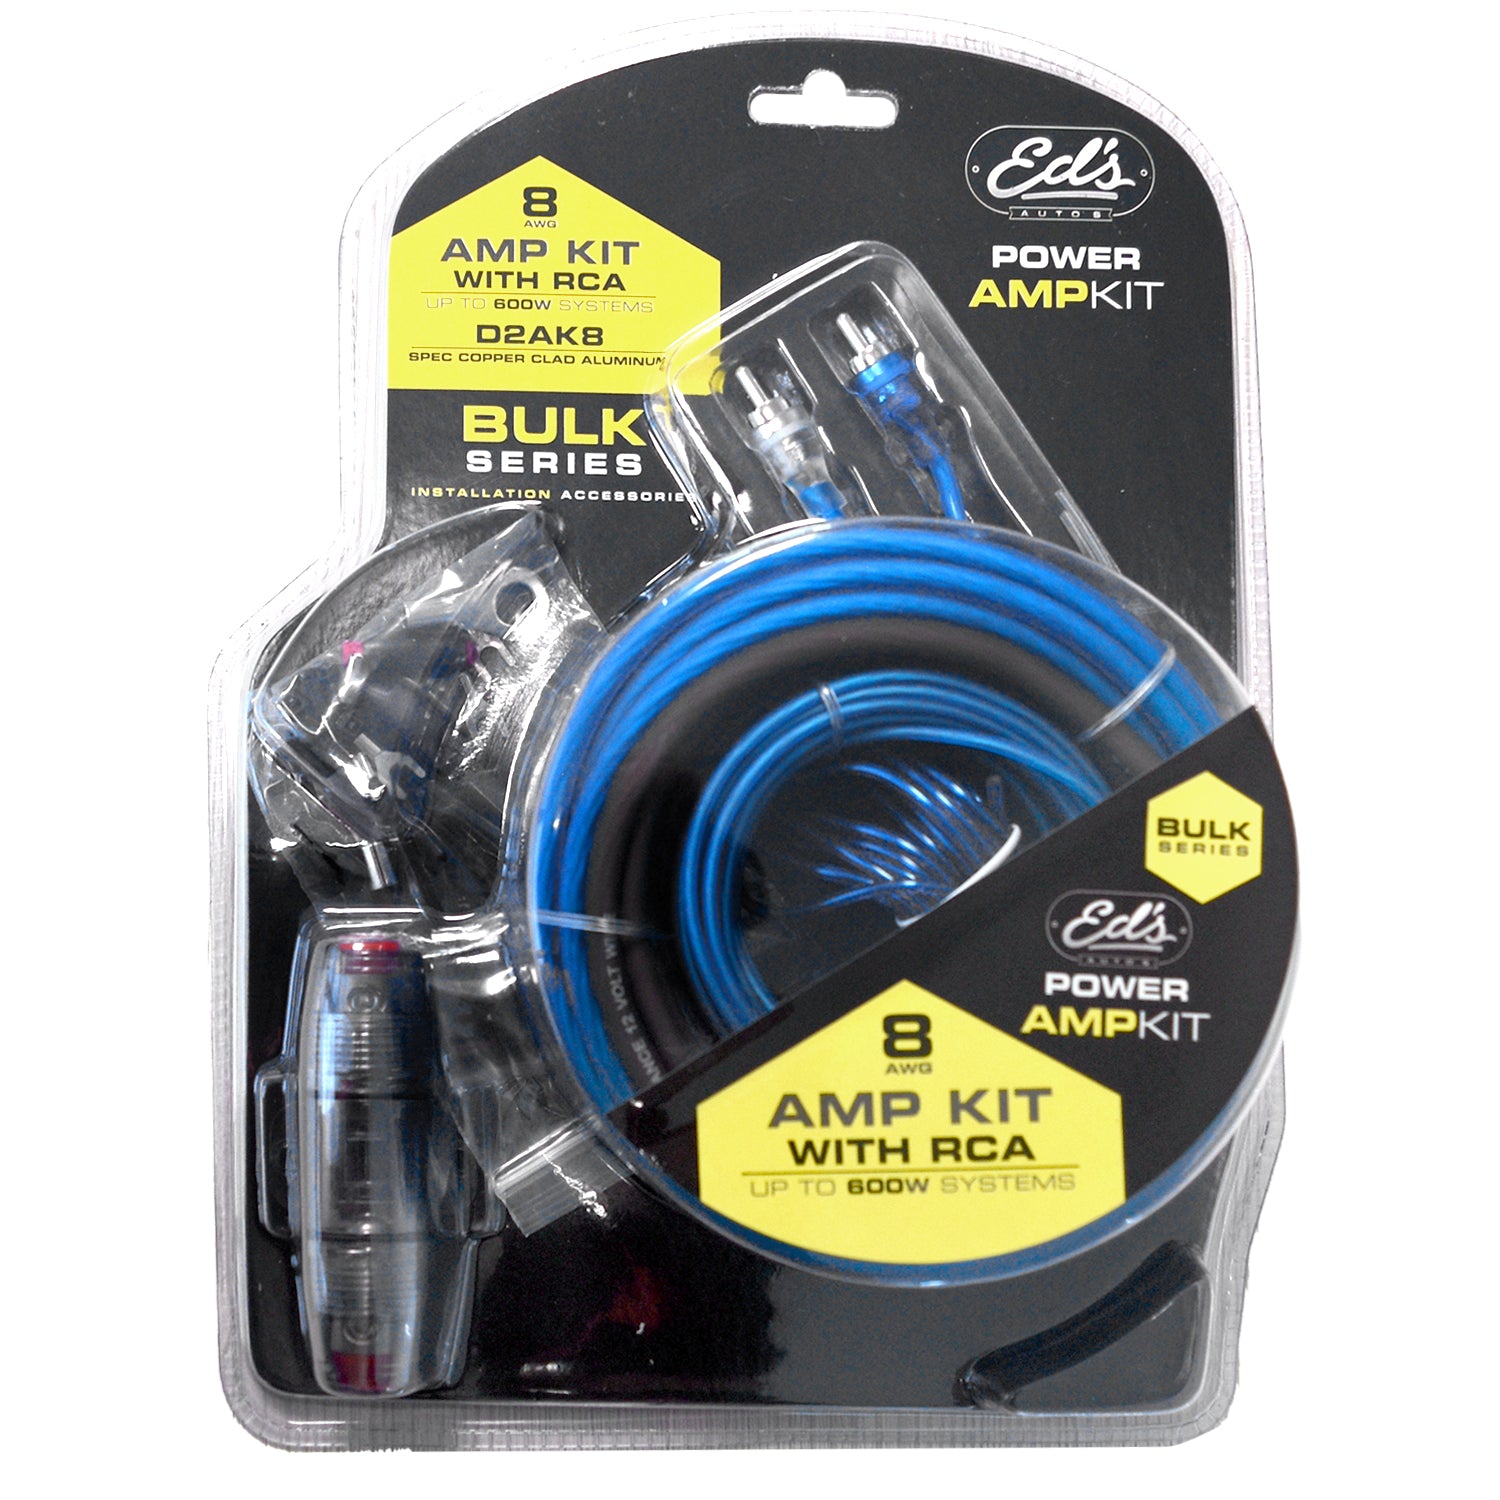 Eds Amp Kit 8Ga - Mini Anl Car Stereo Kit For Amplifier